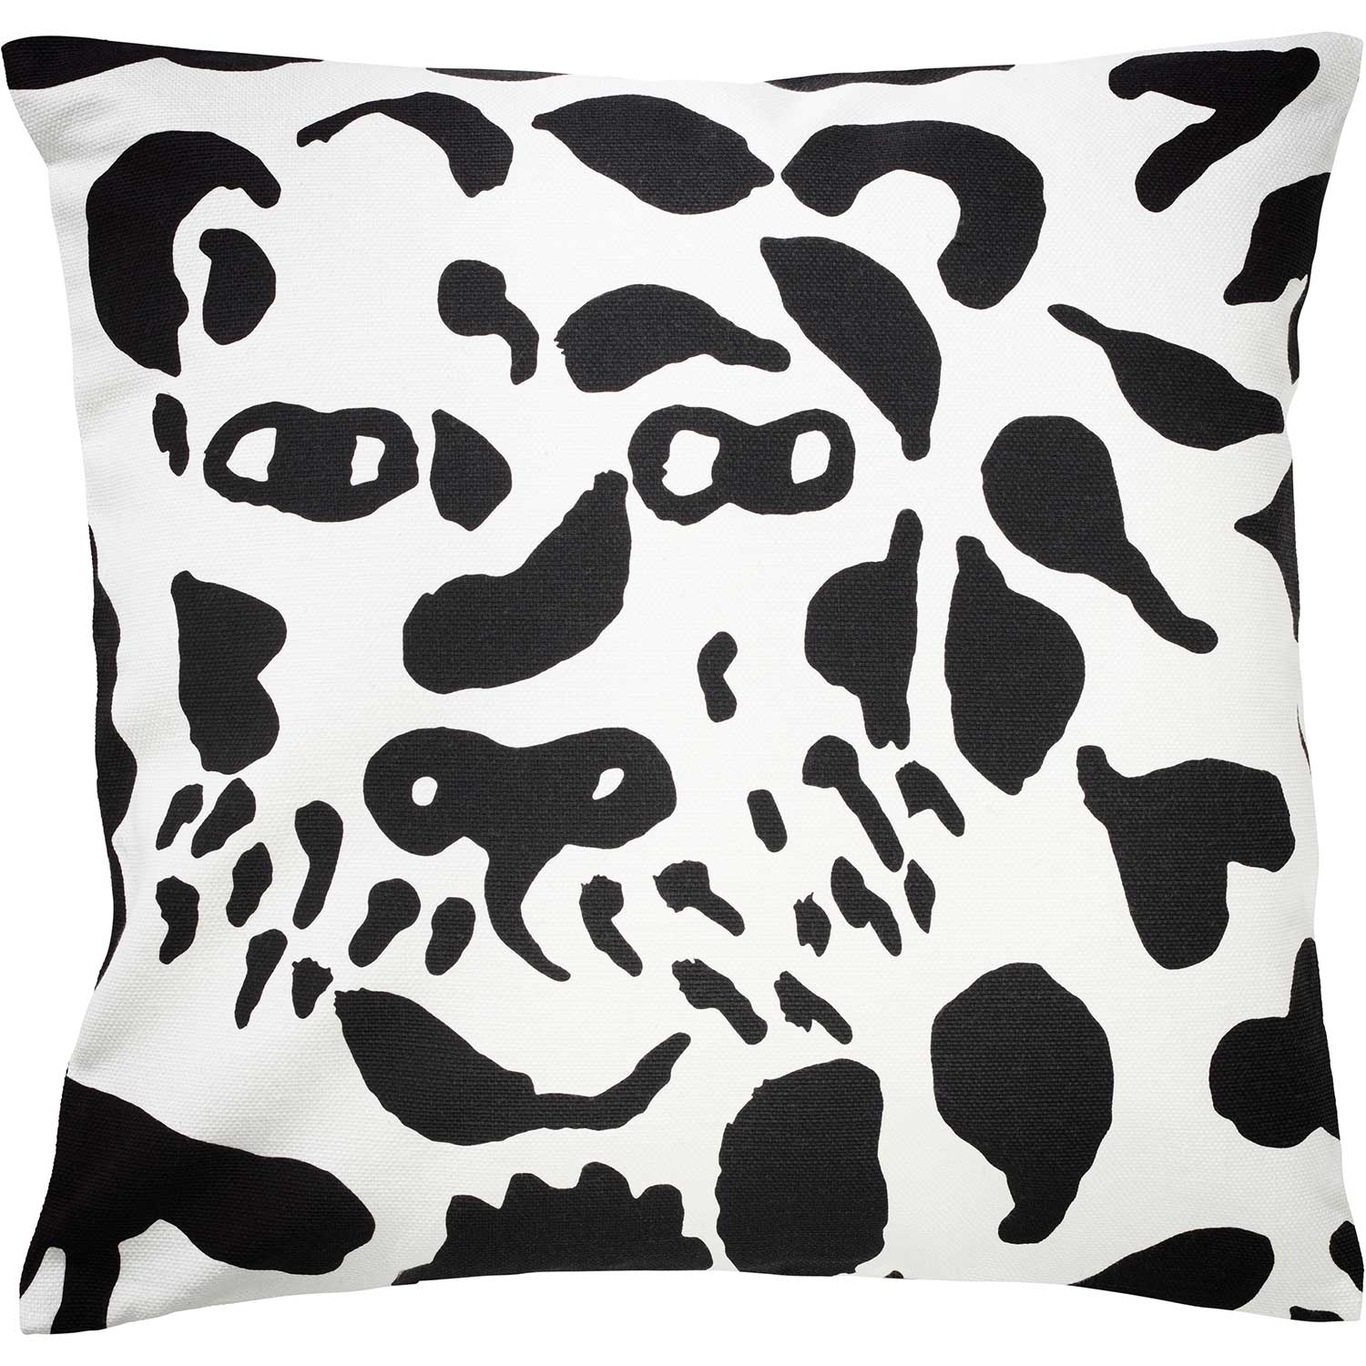 Oiva Toikka Collection Tyynynpäällinen 47x47 cm, Cheetah Black